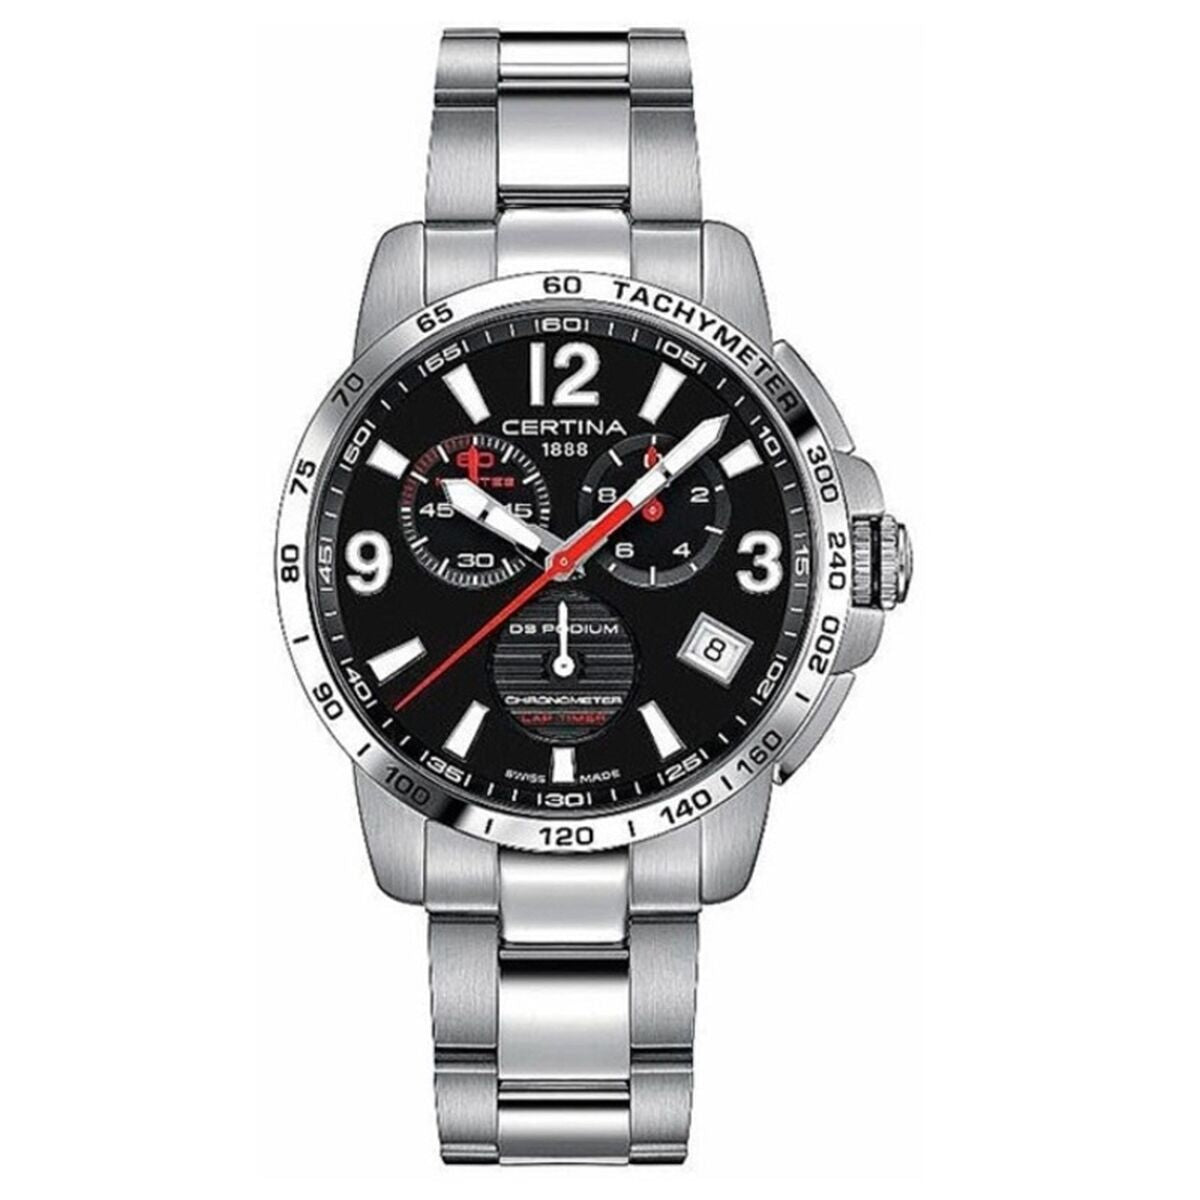 Certina Men's Watch  Ds Podium - Chrono Lap Timer Cosc (contrle Officiel Suisse Des Chronomètres) Gbb In Metallic